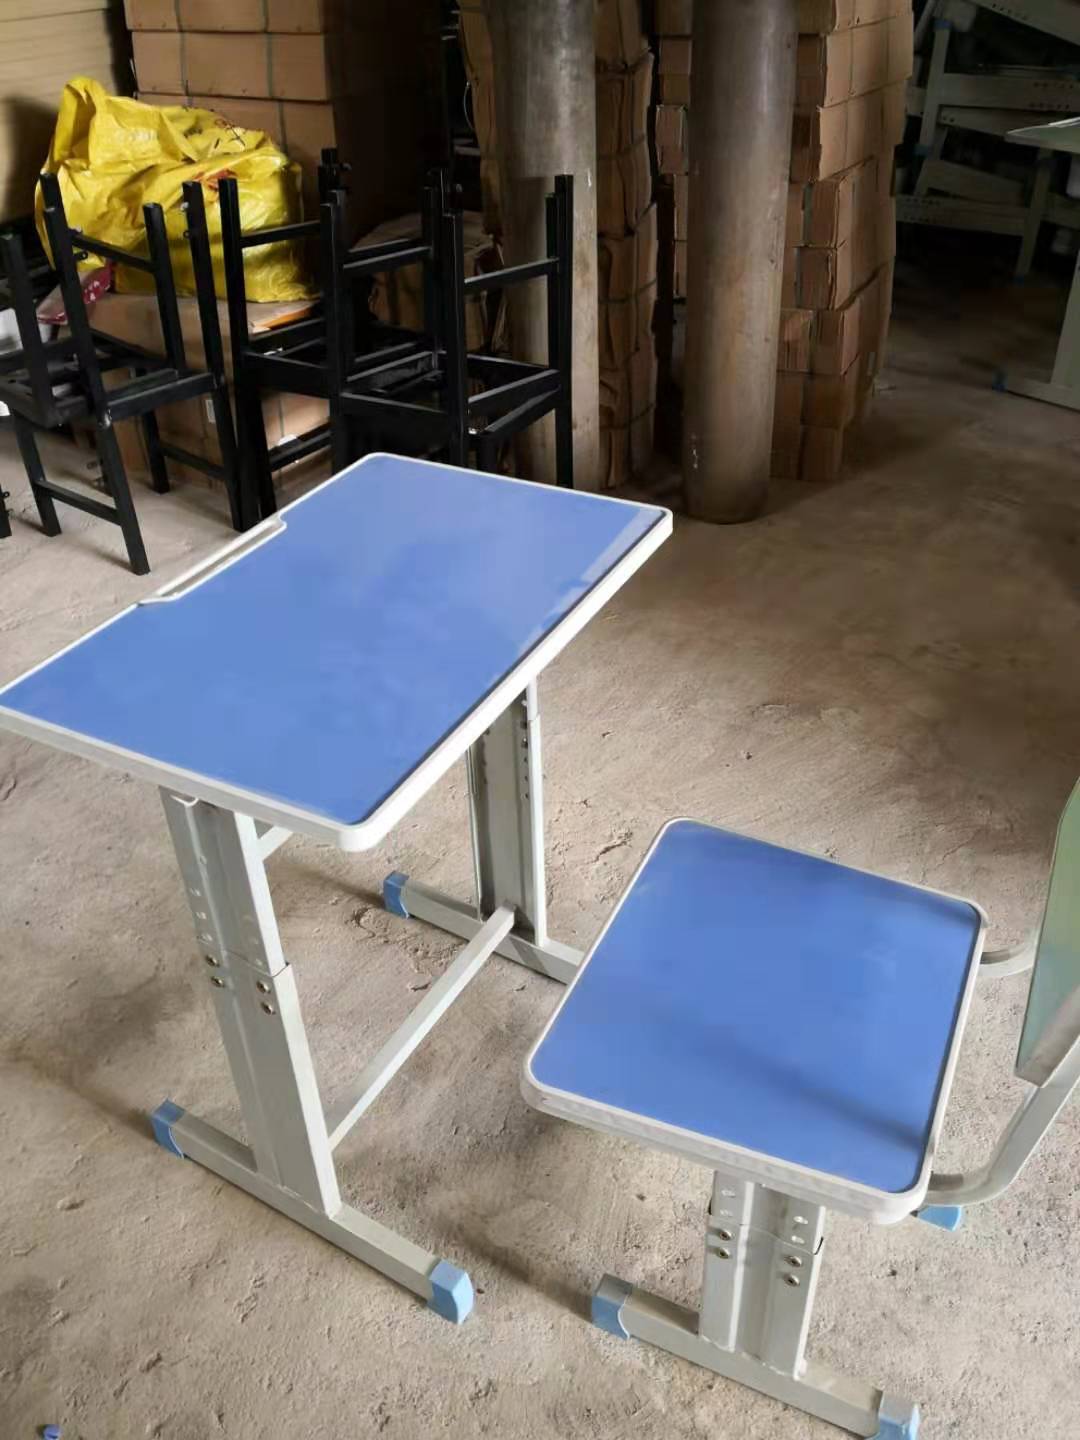 批发供应南宁上林中小学生课桌椅,木质课桌椅款式